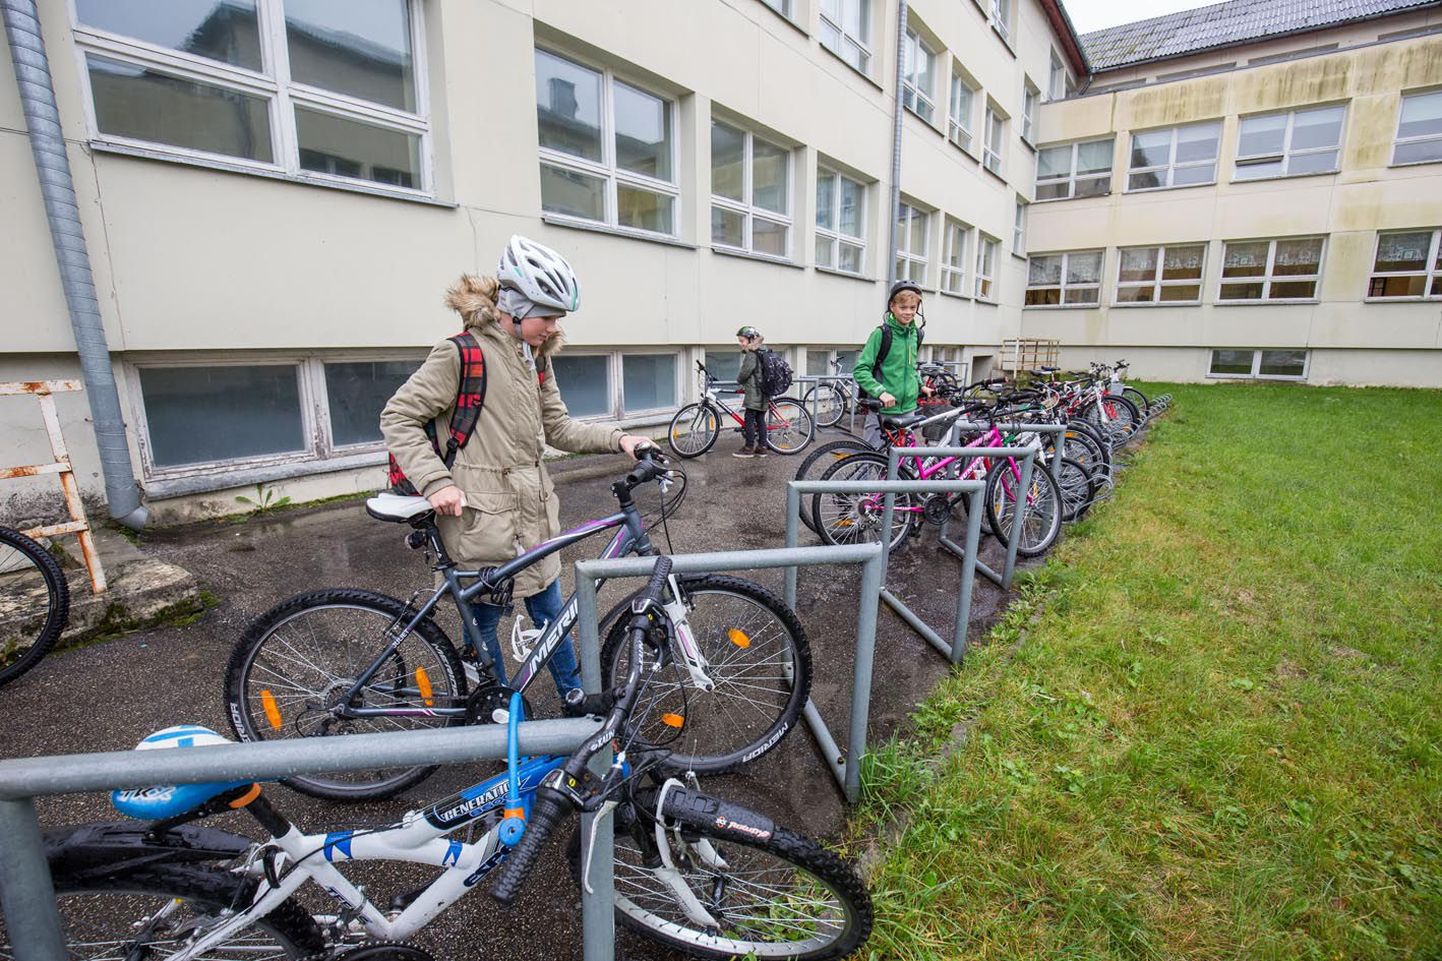 Paide ühisgümnaasiumi õpilased Marleene Randmaa (vasakult), Hendrik Haamer ja Rasmus Klaas sõidavad koolist koju jalgratastega ja kannavad nõuetekohaselt kiivreid.